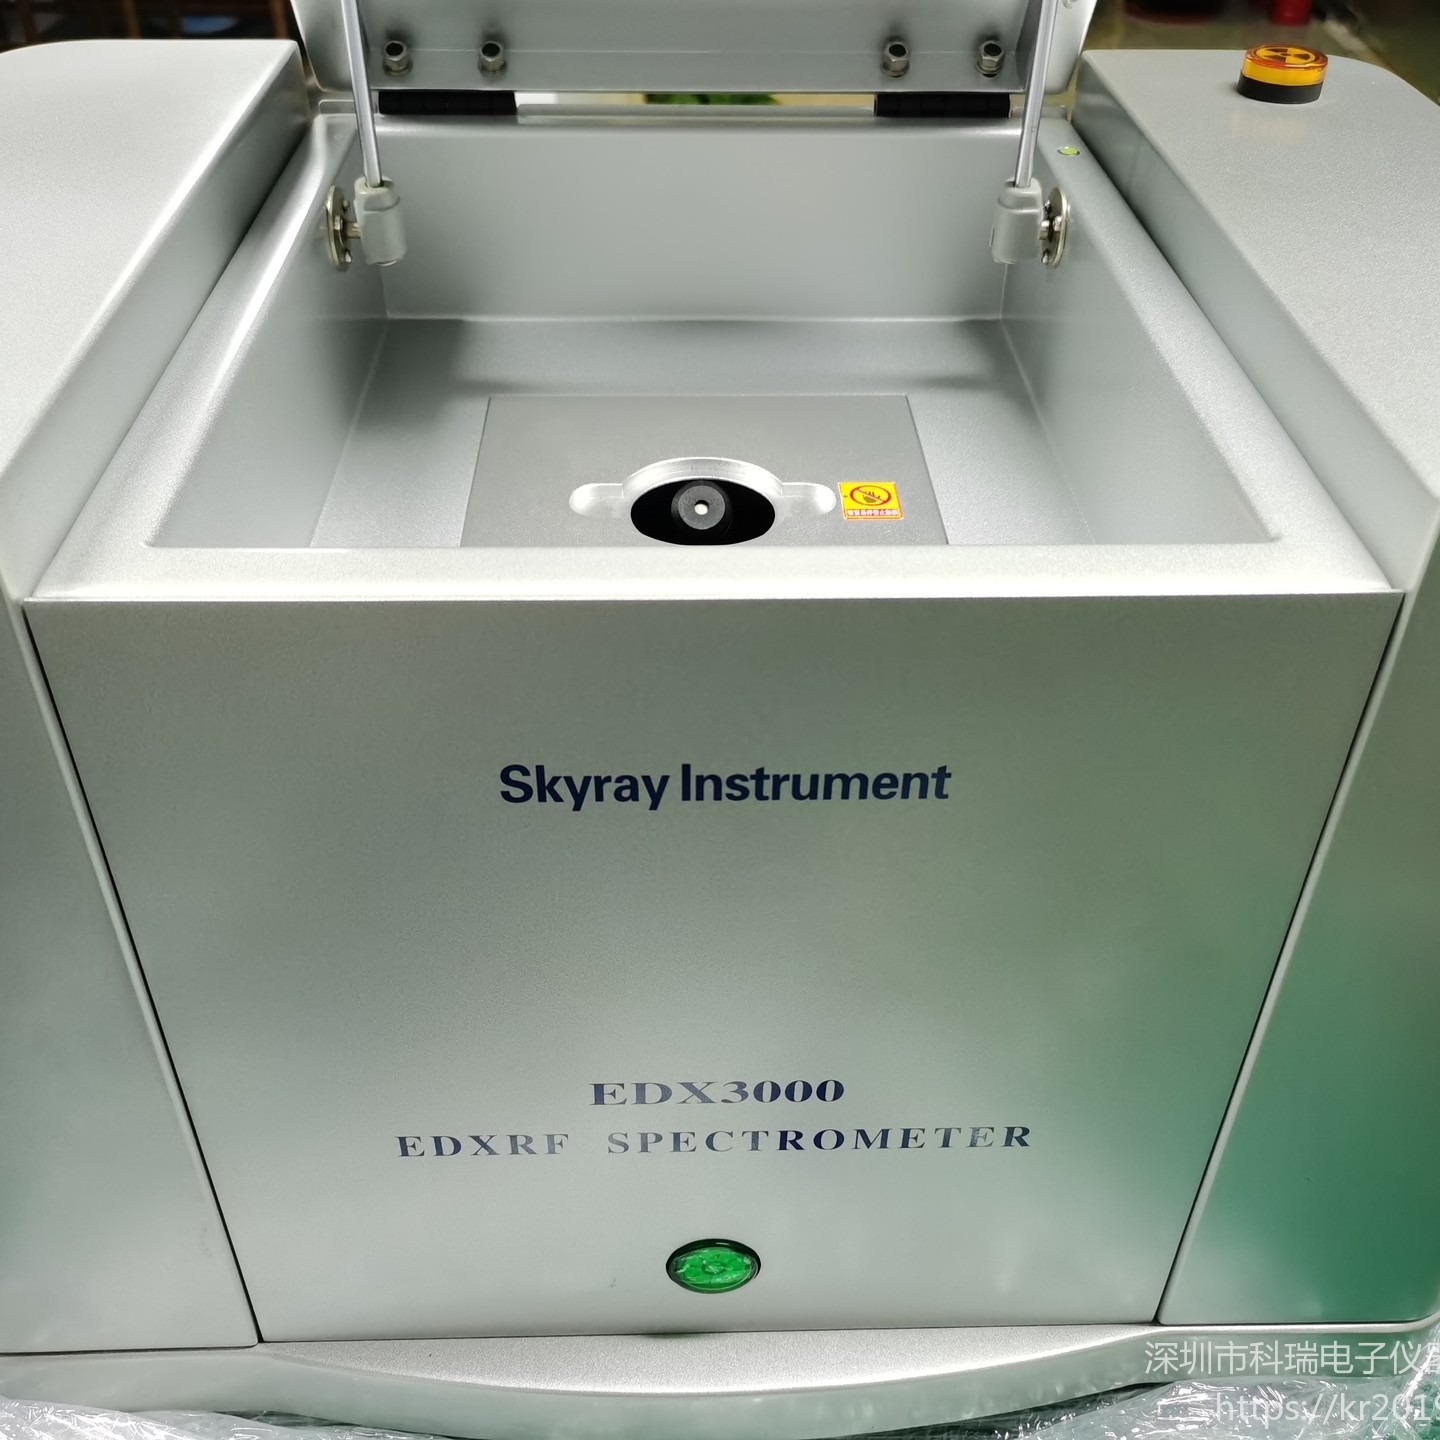 出售/回收 天瑞Skyray Instrument FT-IR 6600  傅立叶变换红外光谱仪 低价出售图片